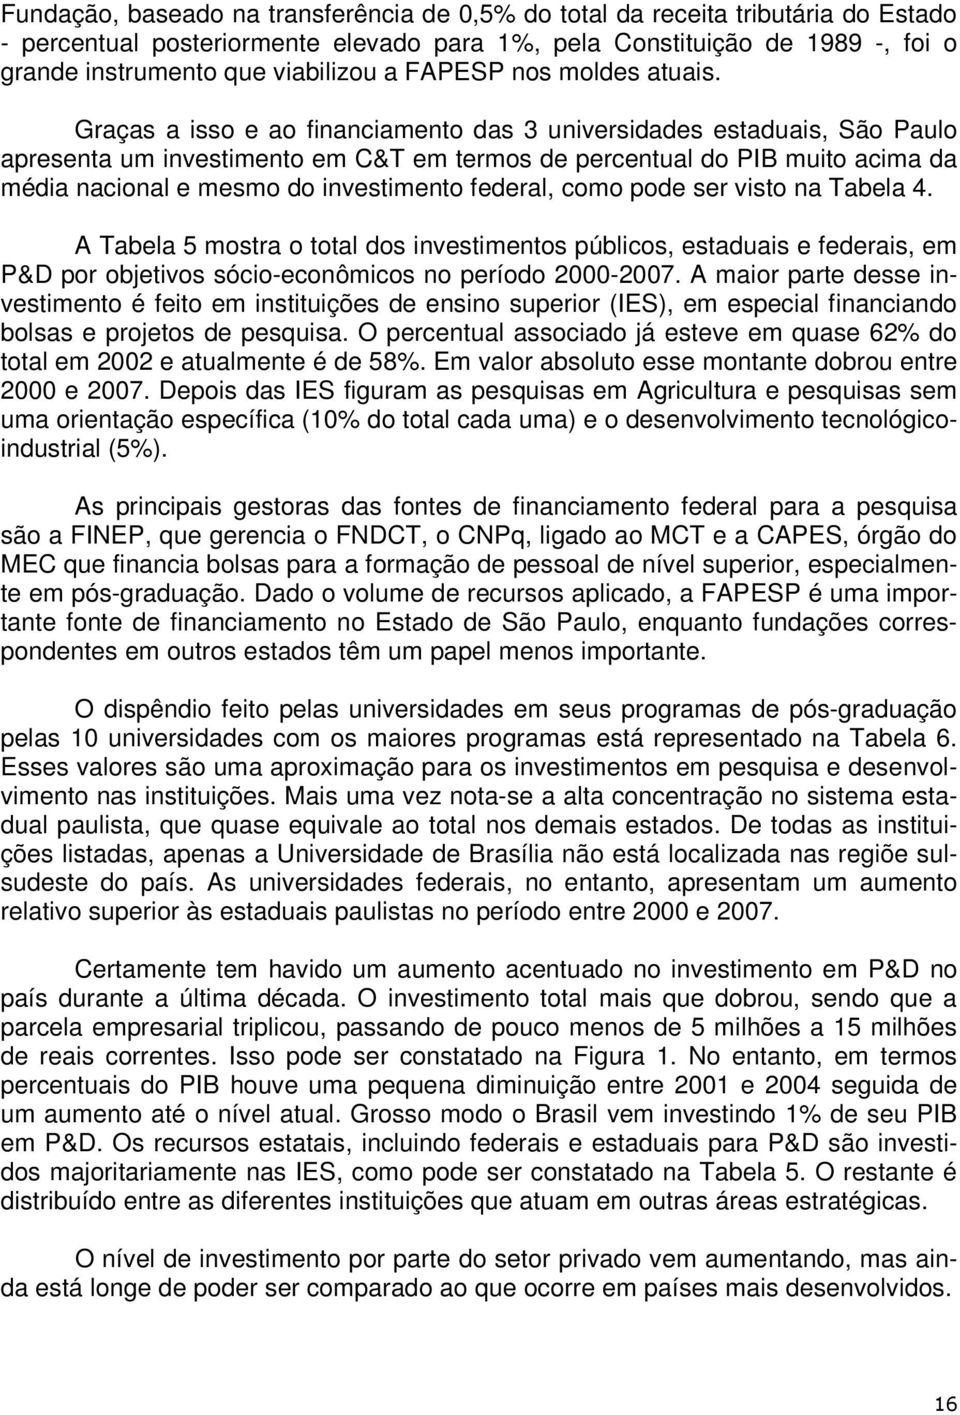 Graças a isso e ao financiamento das 3 universidades estaduais, São Paulo apresenta um investimento em C&T em termos de percentual do PIB muito acima da média nacional e mesmo do investimento